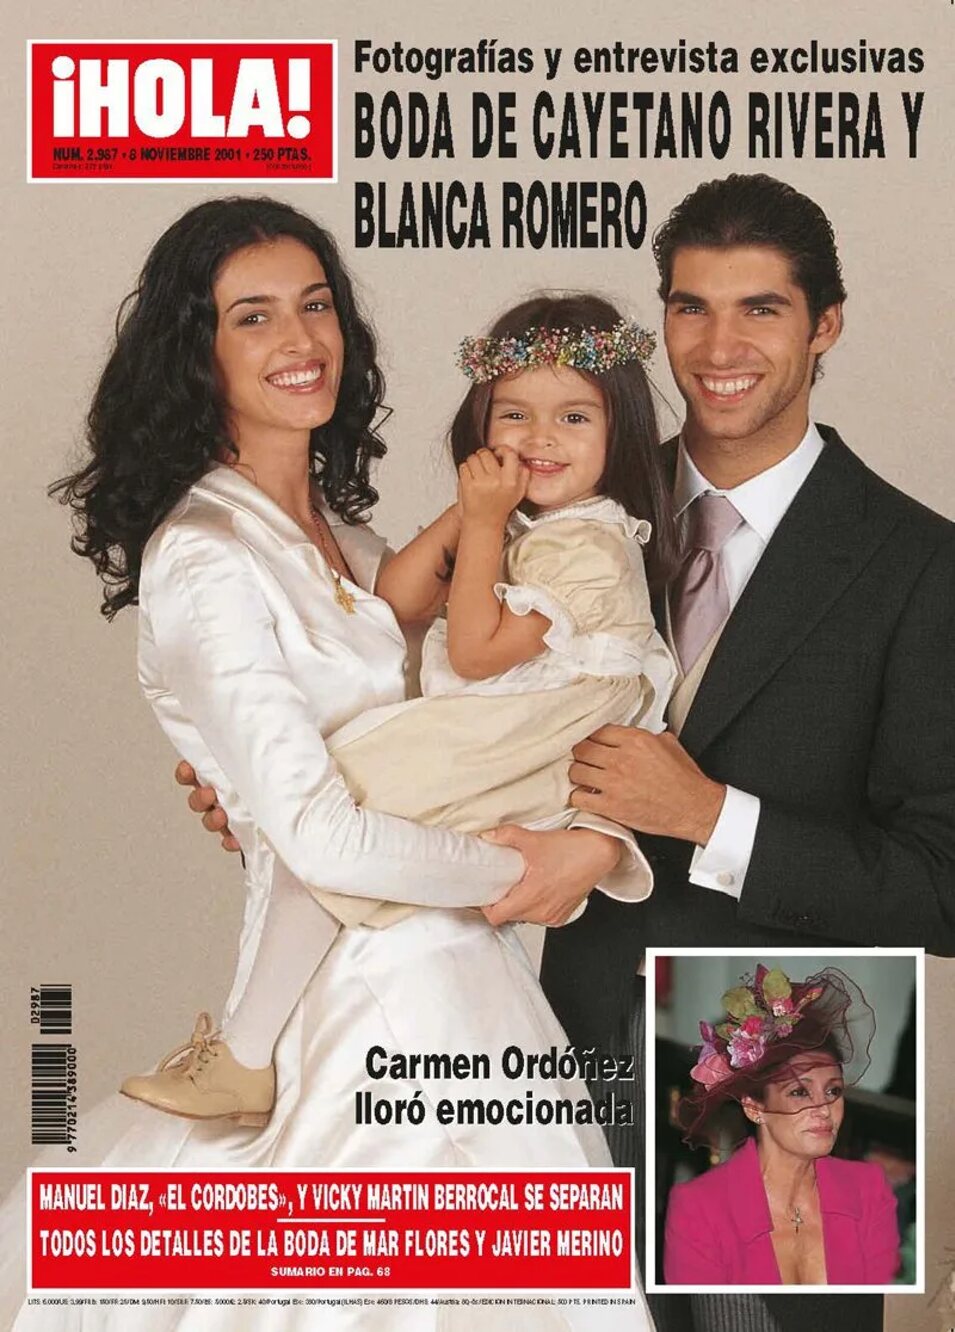 Blanca Romero y Cayetano Rivera se casaron en 2001 en Oviedo | Foto: ¡HOLA!